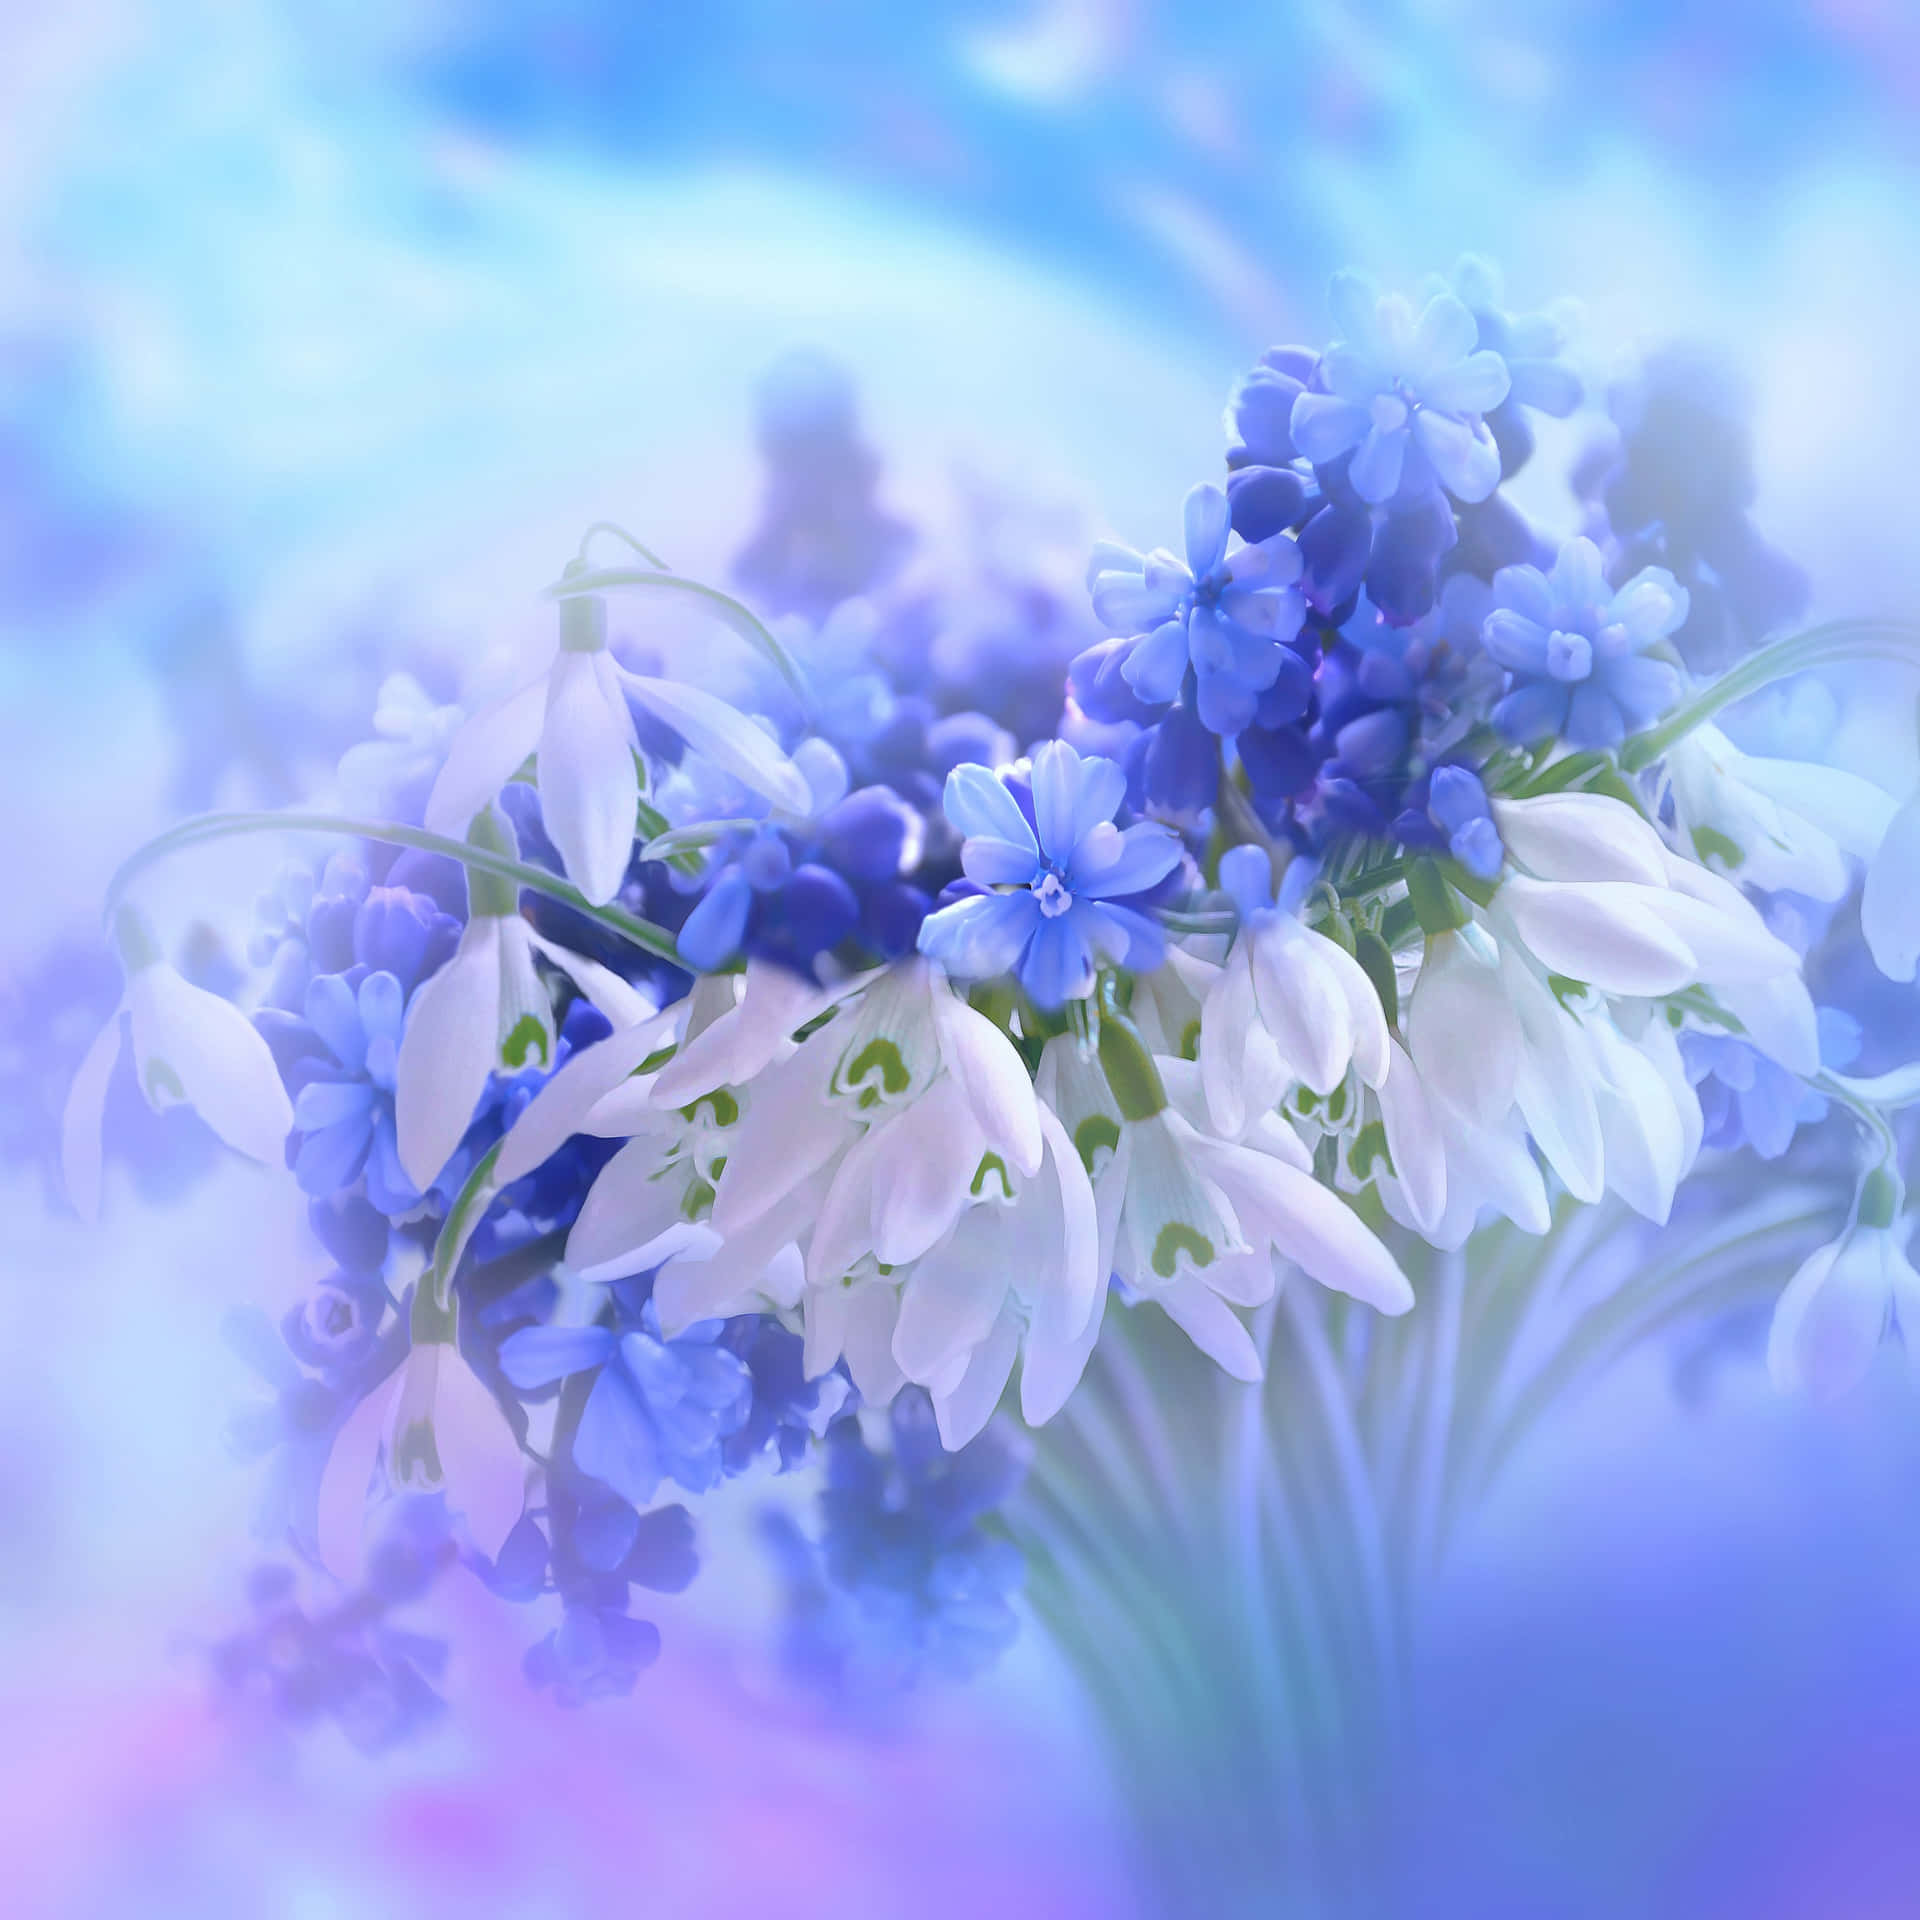 Et strålende felt af blå blomster omgivet af duggdråber.